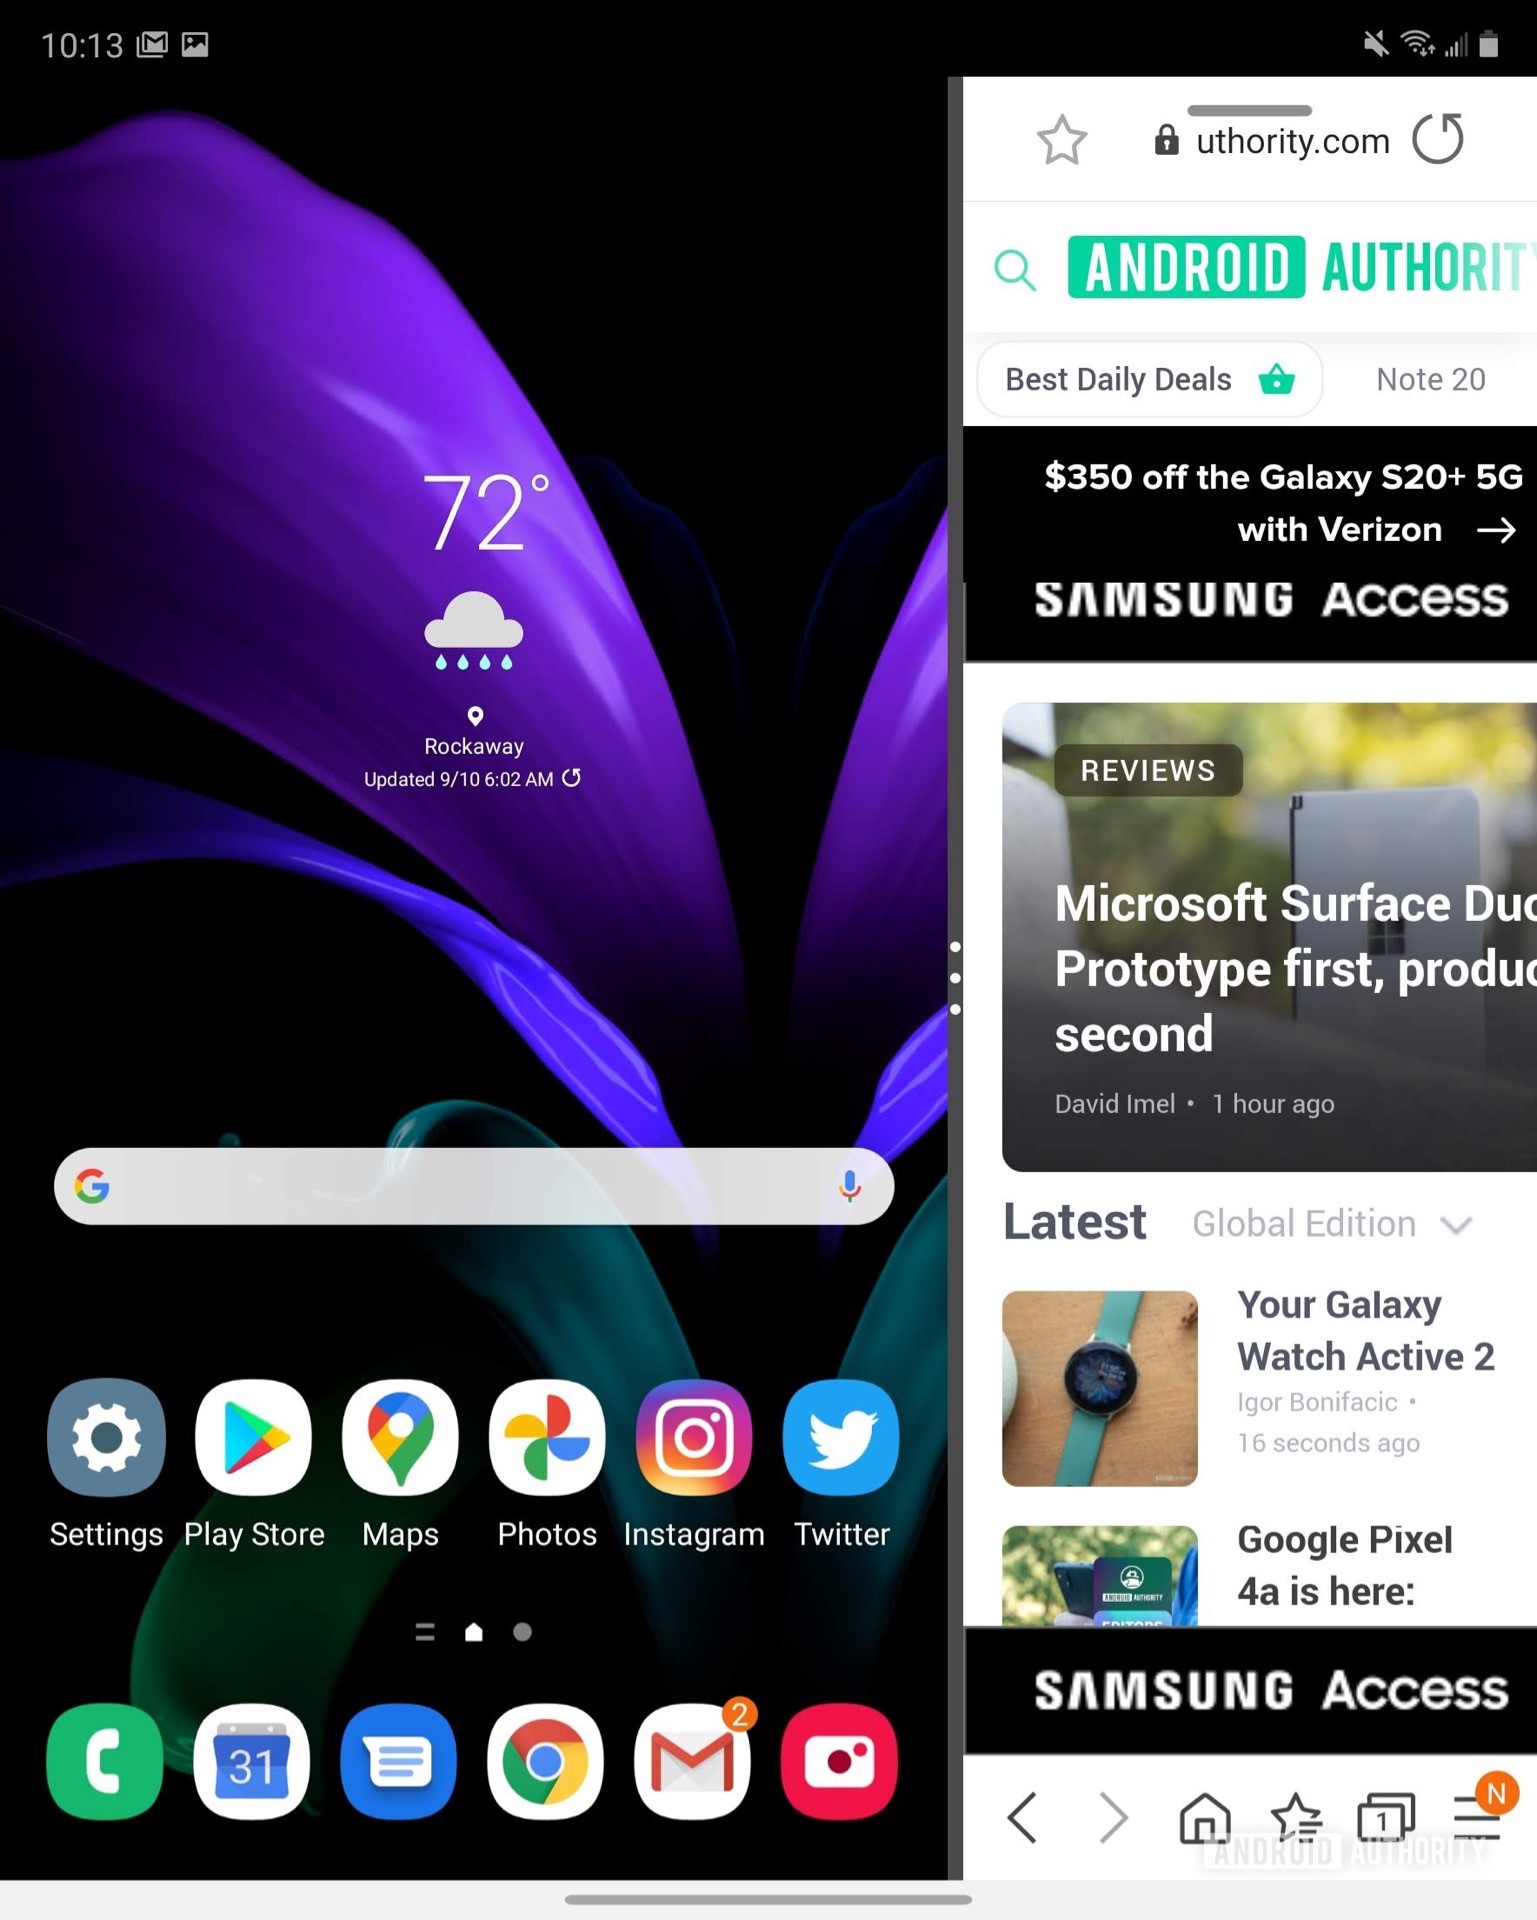 Samsung Galaxy Z Fold 2 Main Display more multitasking